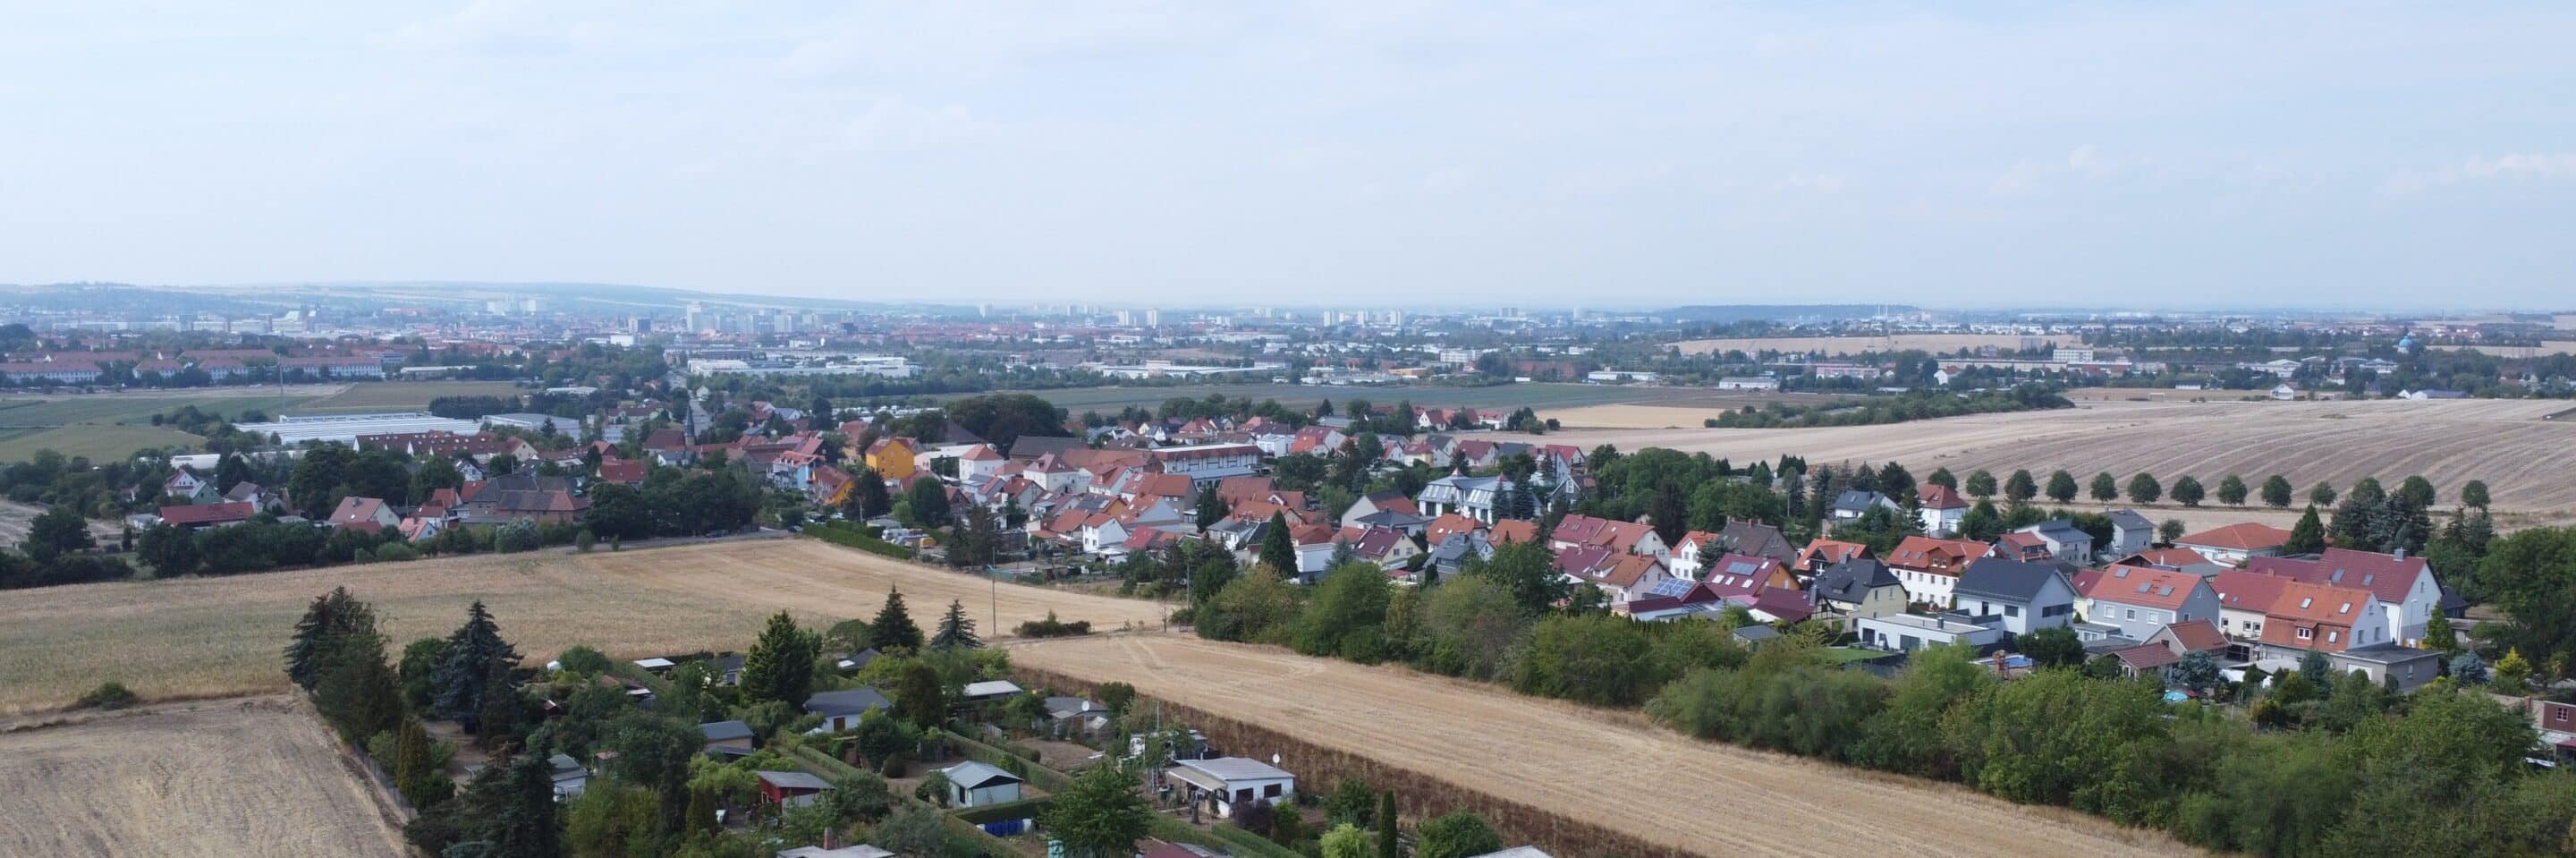 Dittelstedt Ortsteil von Erfurt aus der Vogelperspektive.